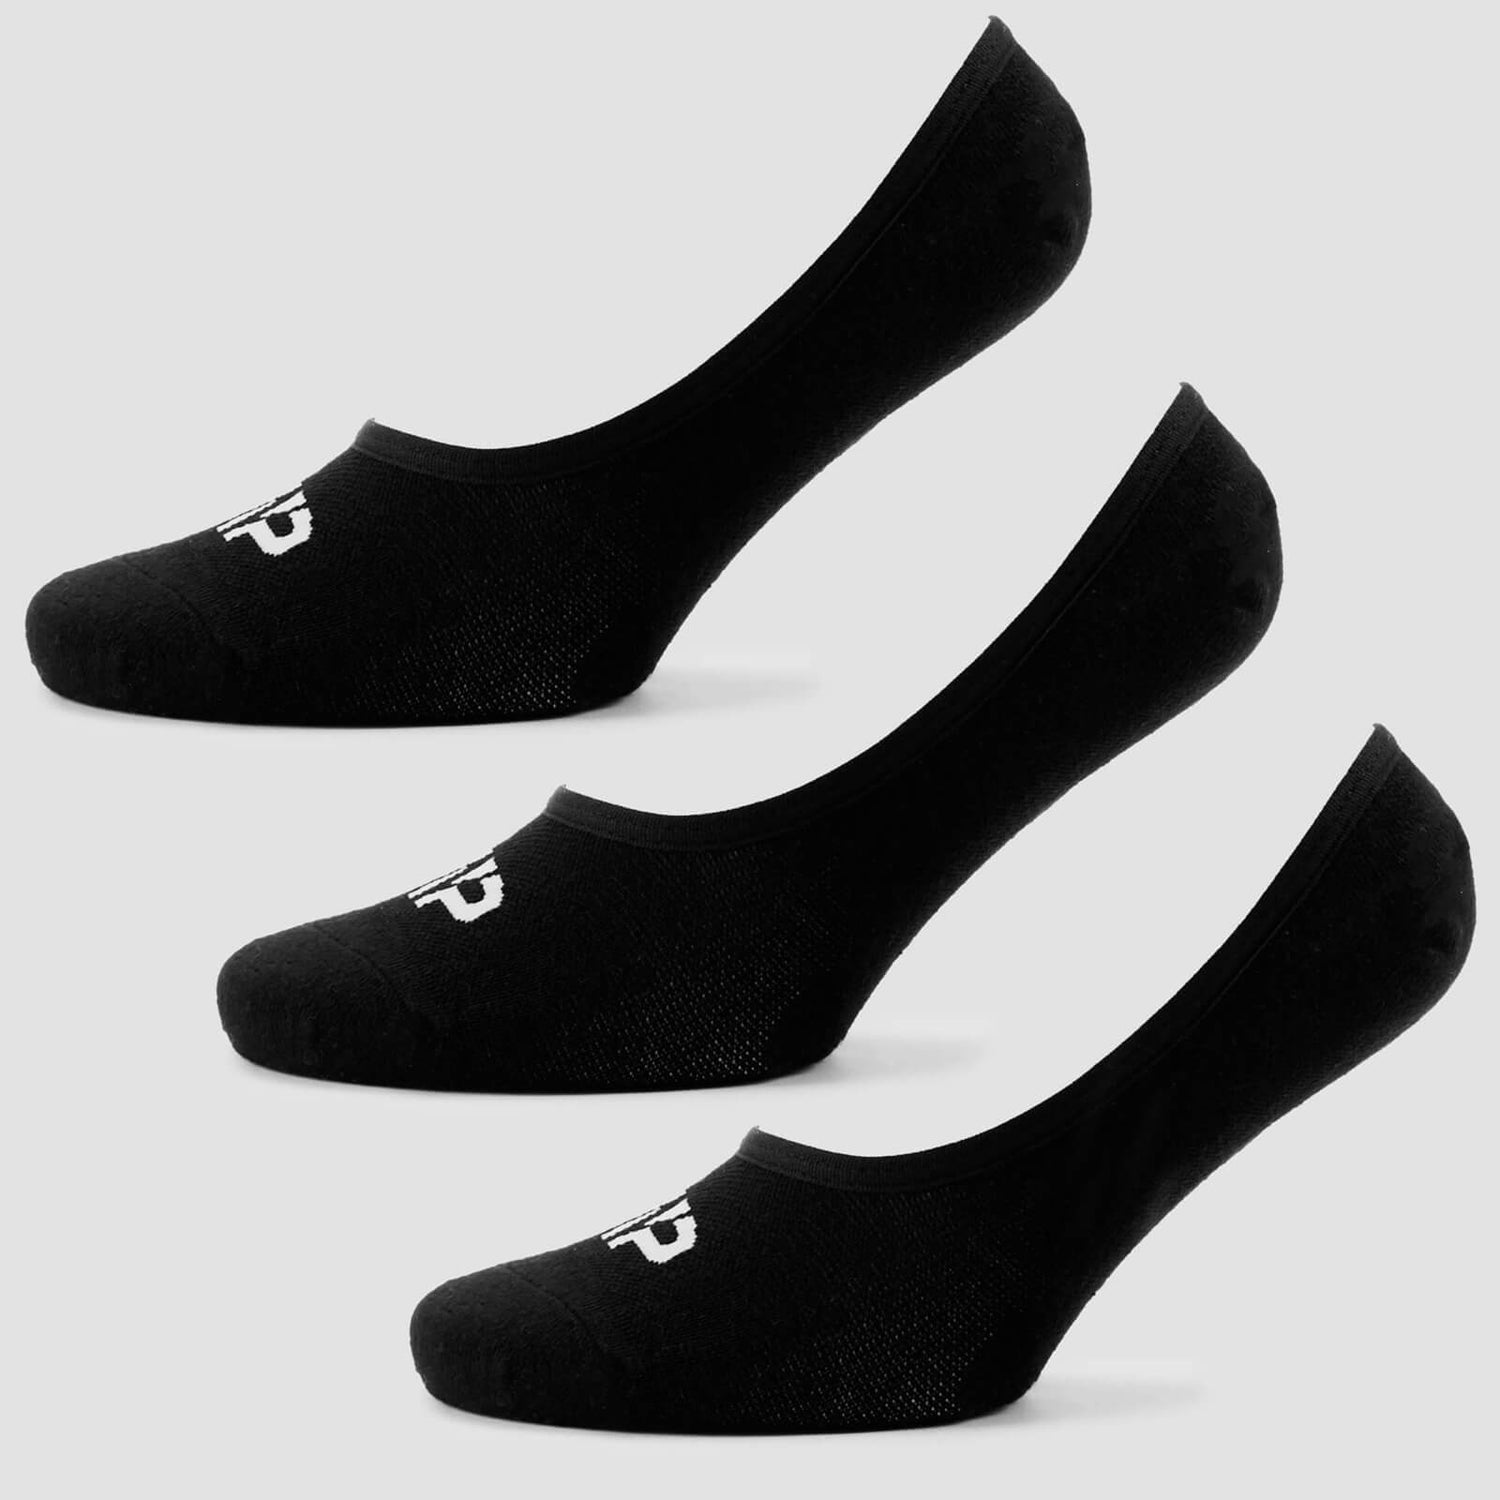 Γυναικείες Αόρατες Κάλτσες - Μαύρες - UK 7-9